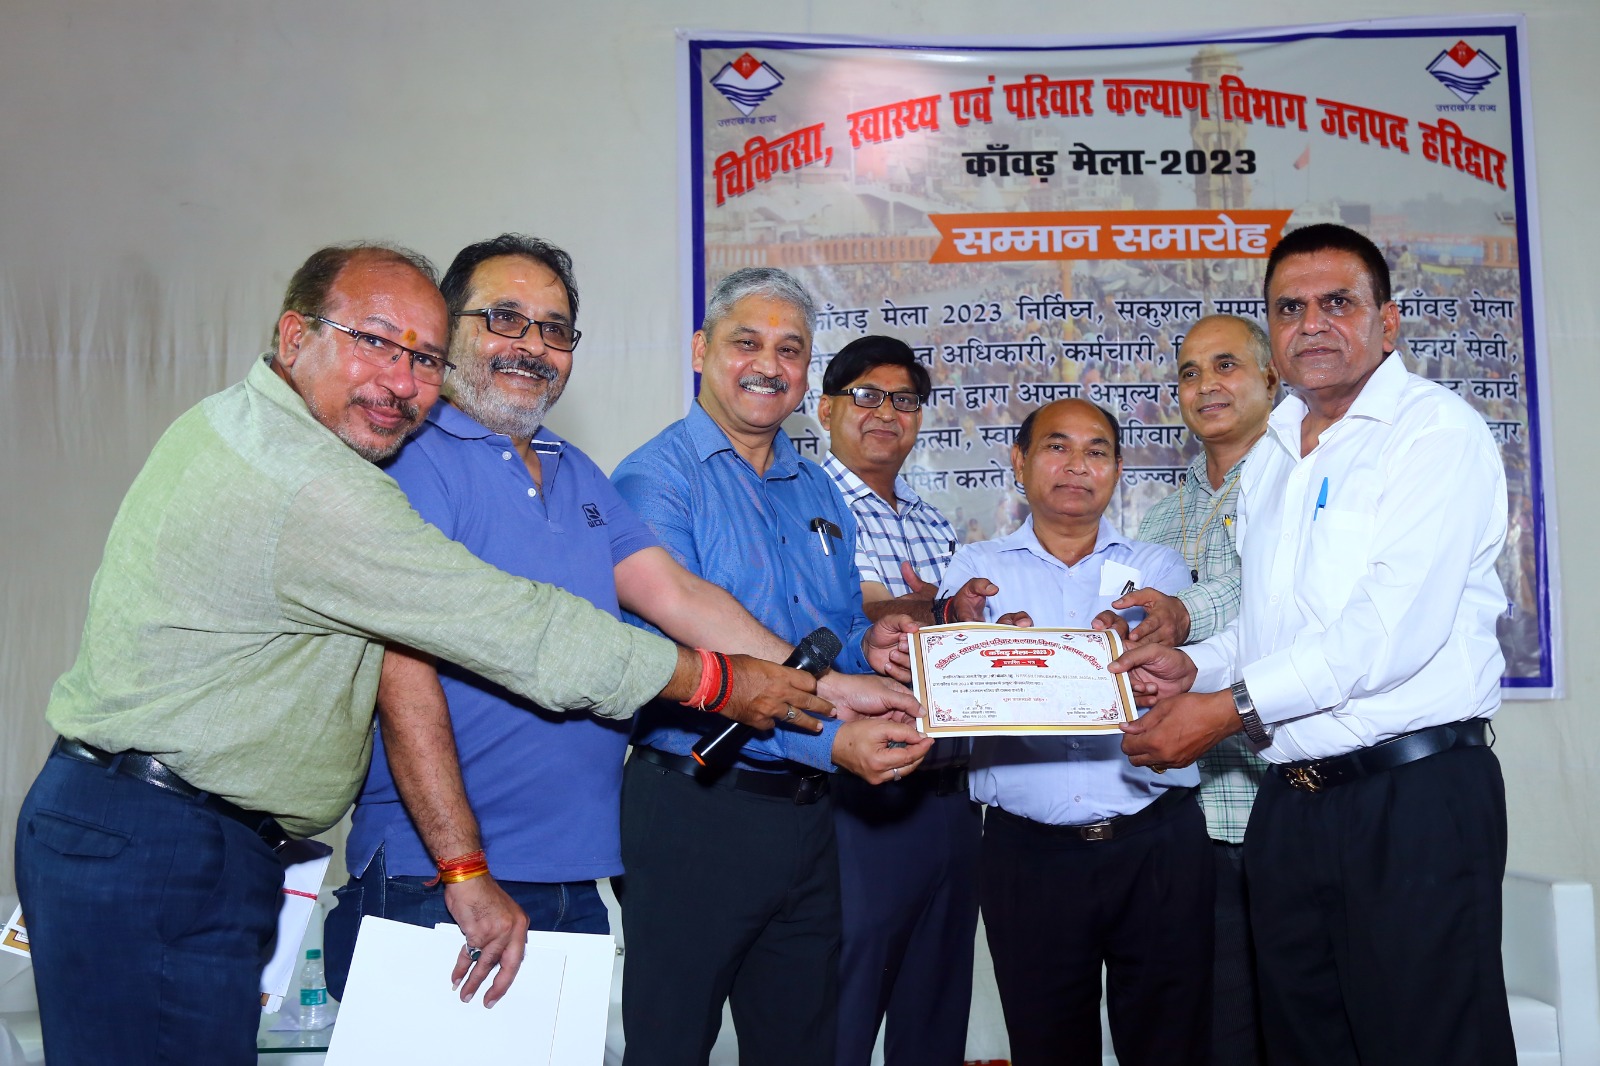 haridwar news डा. नरेश चौधरी को सम्पूर्ण कांवड़ मेला अवधि में उत्कृष्ठ कार्यों के लिये स्वास्थय विभाग द्वारा किया  सम्मानित